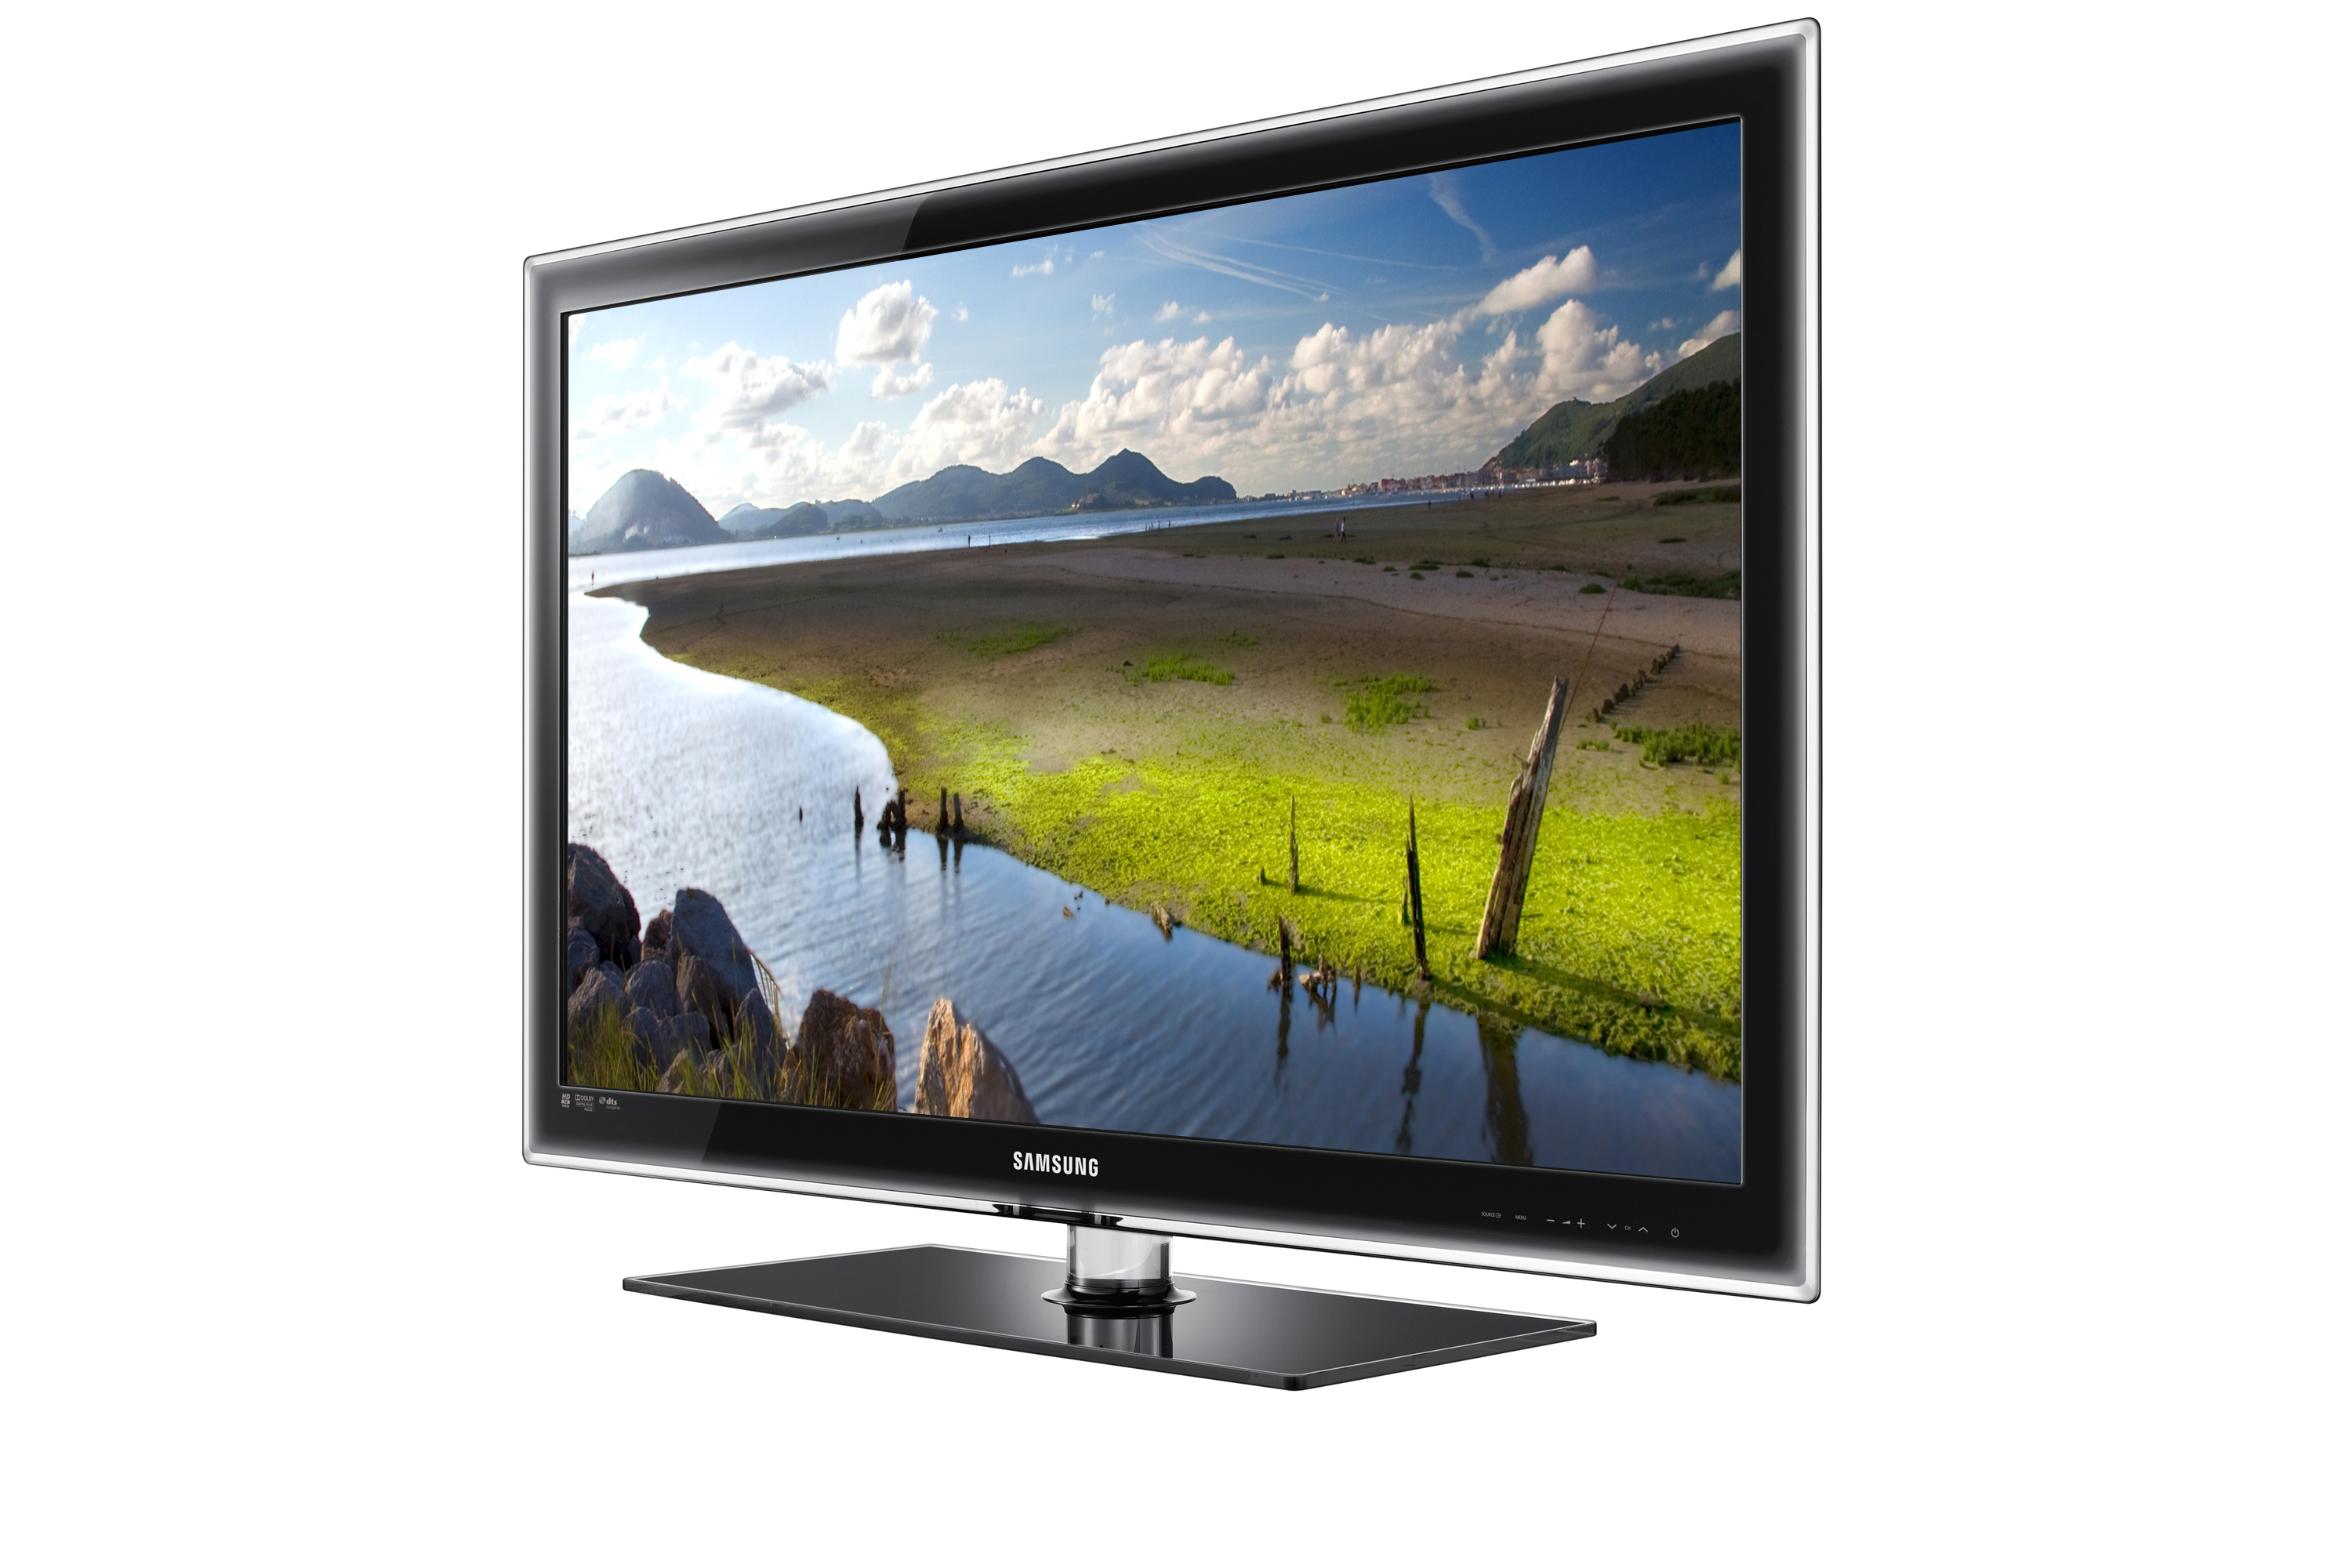 Телевизор Самсунг Купить Цена В Самаре